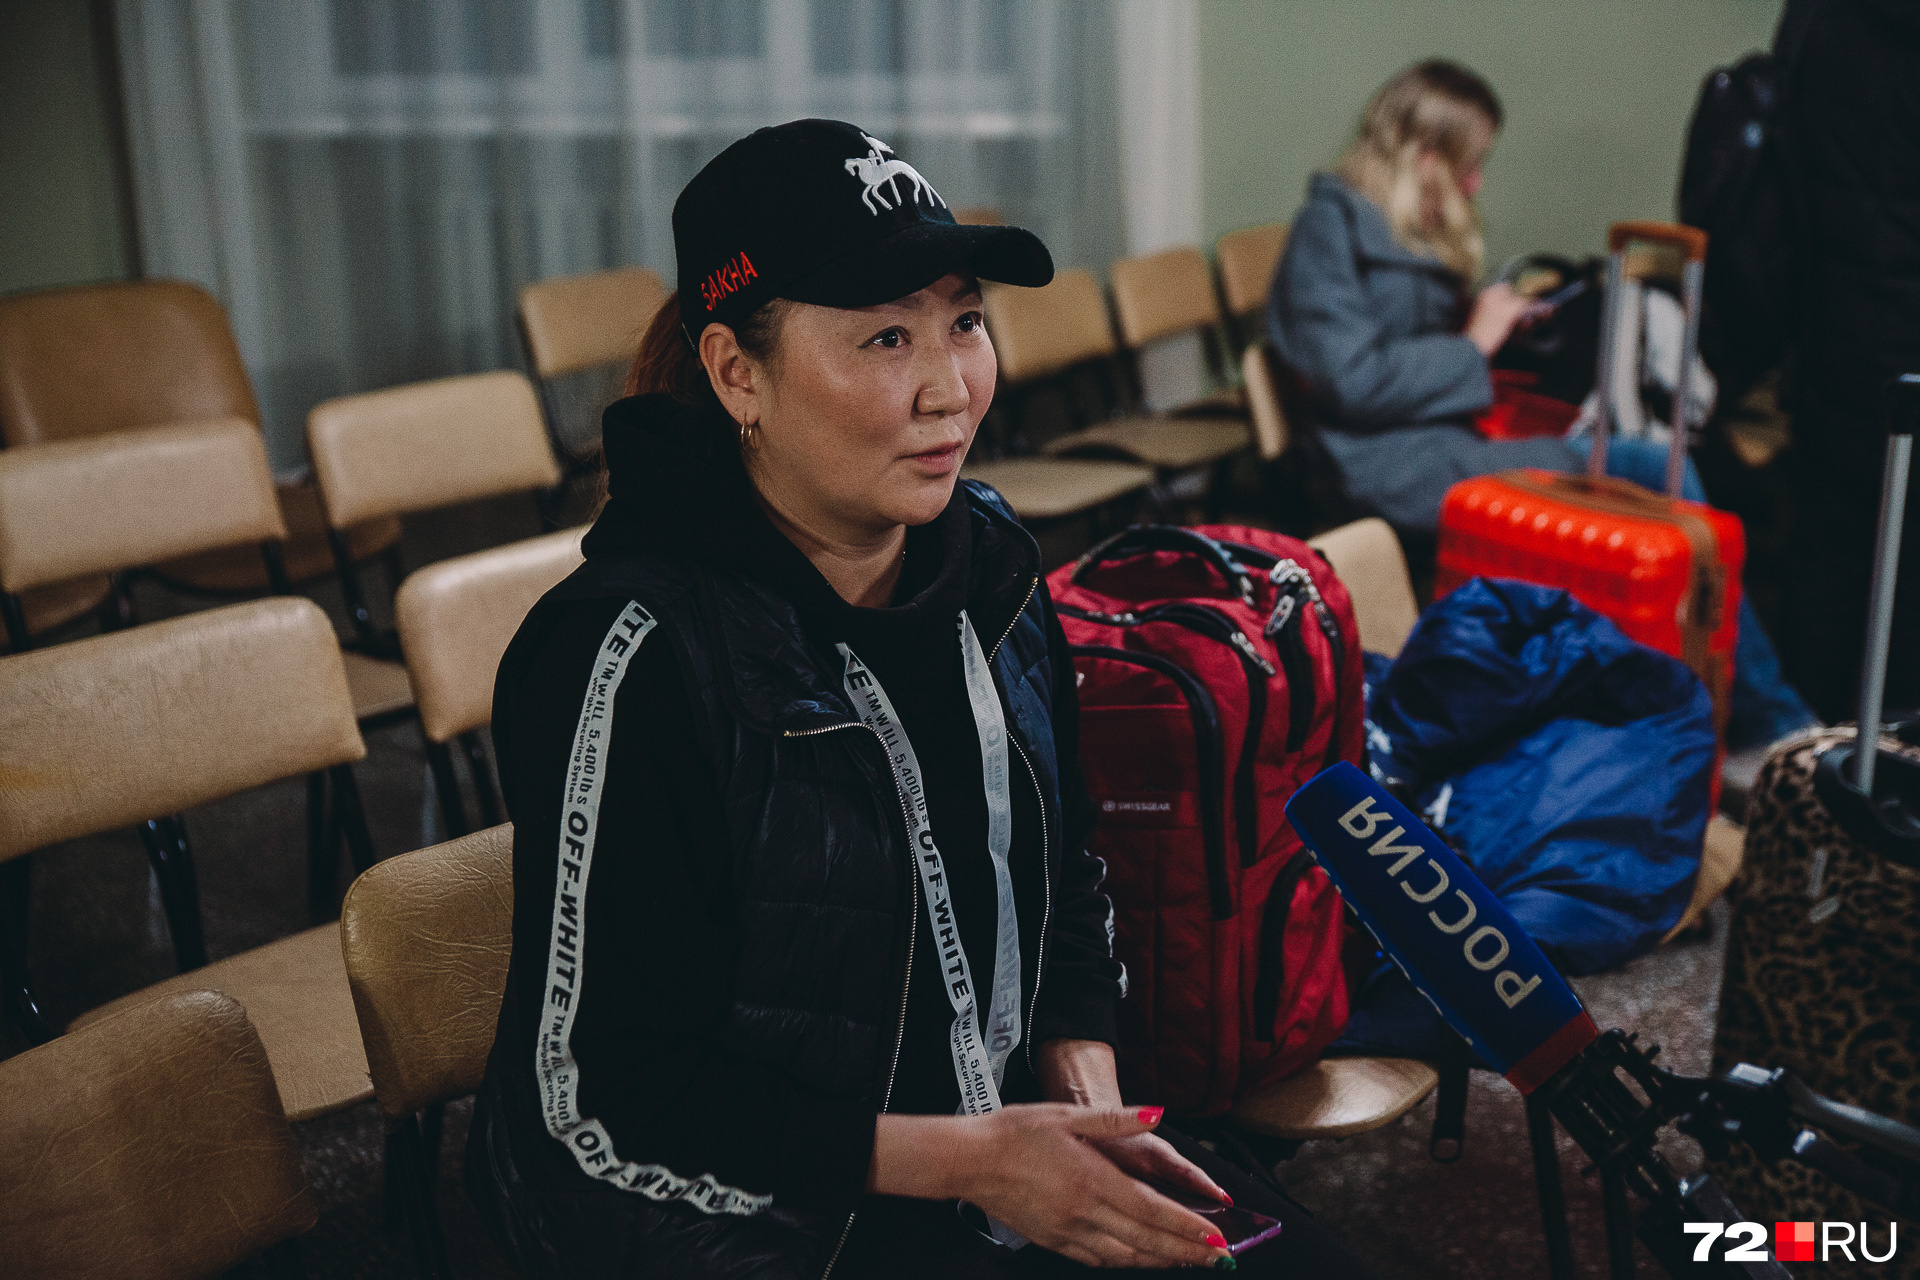 Сара из Якутска согласилась эвакуироваться в Тюмень, так как была уверена в качестве российской медицины, если вдруг что. В Китае, на своей родине, остался ее муж